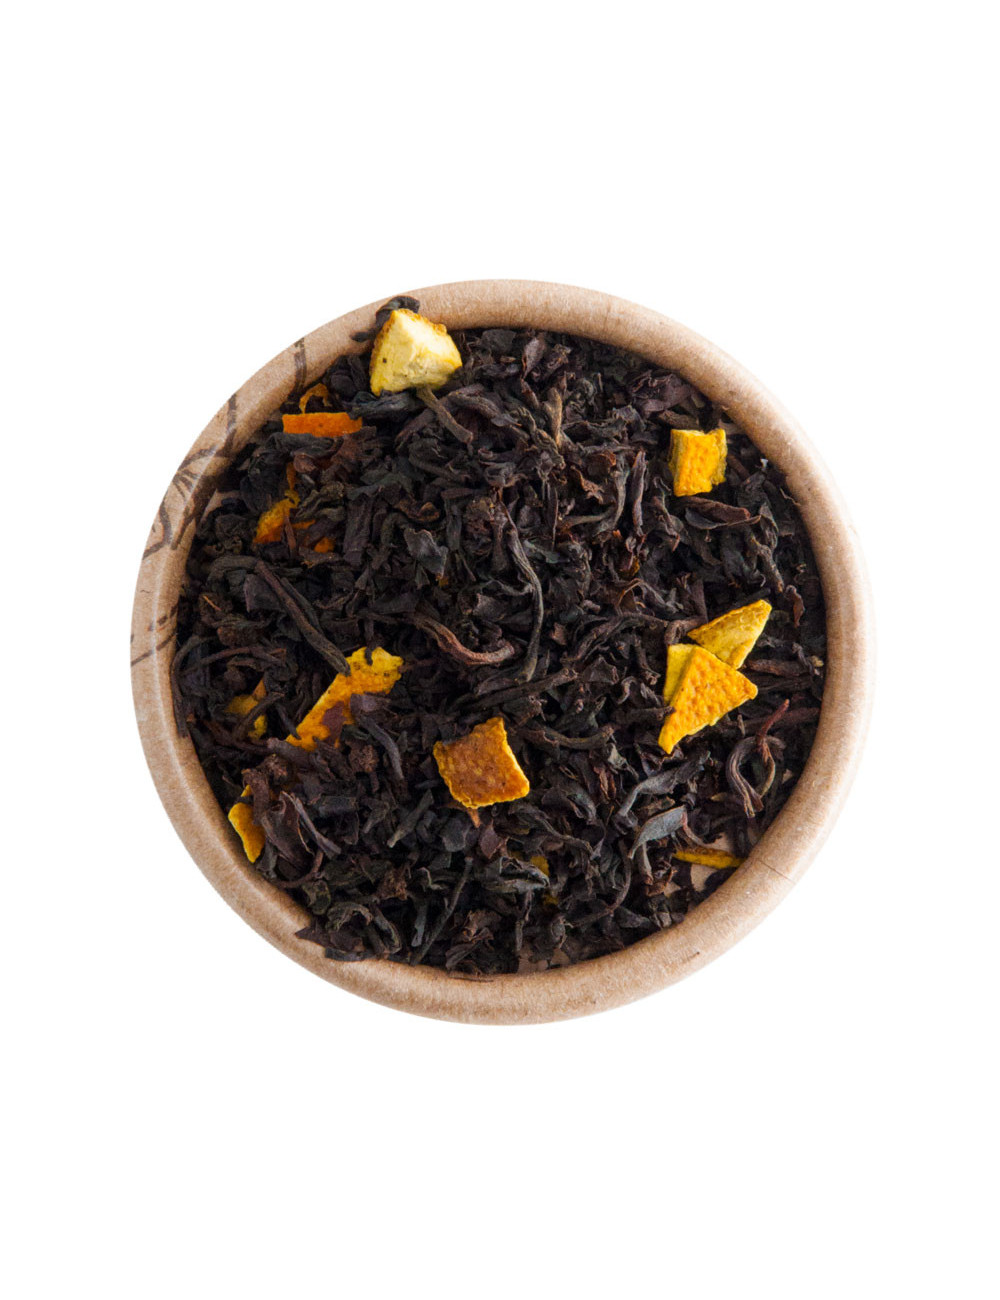 Arancia tè nero aromatizzato - La Pianta del Tè shop online